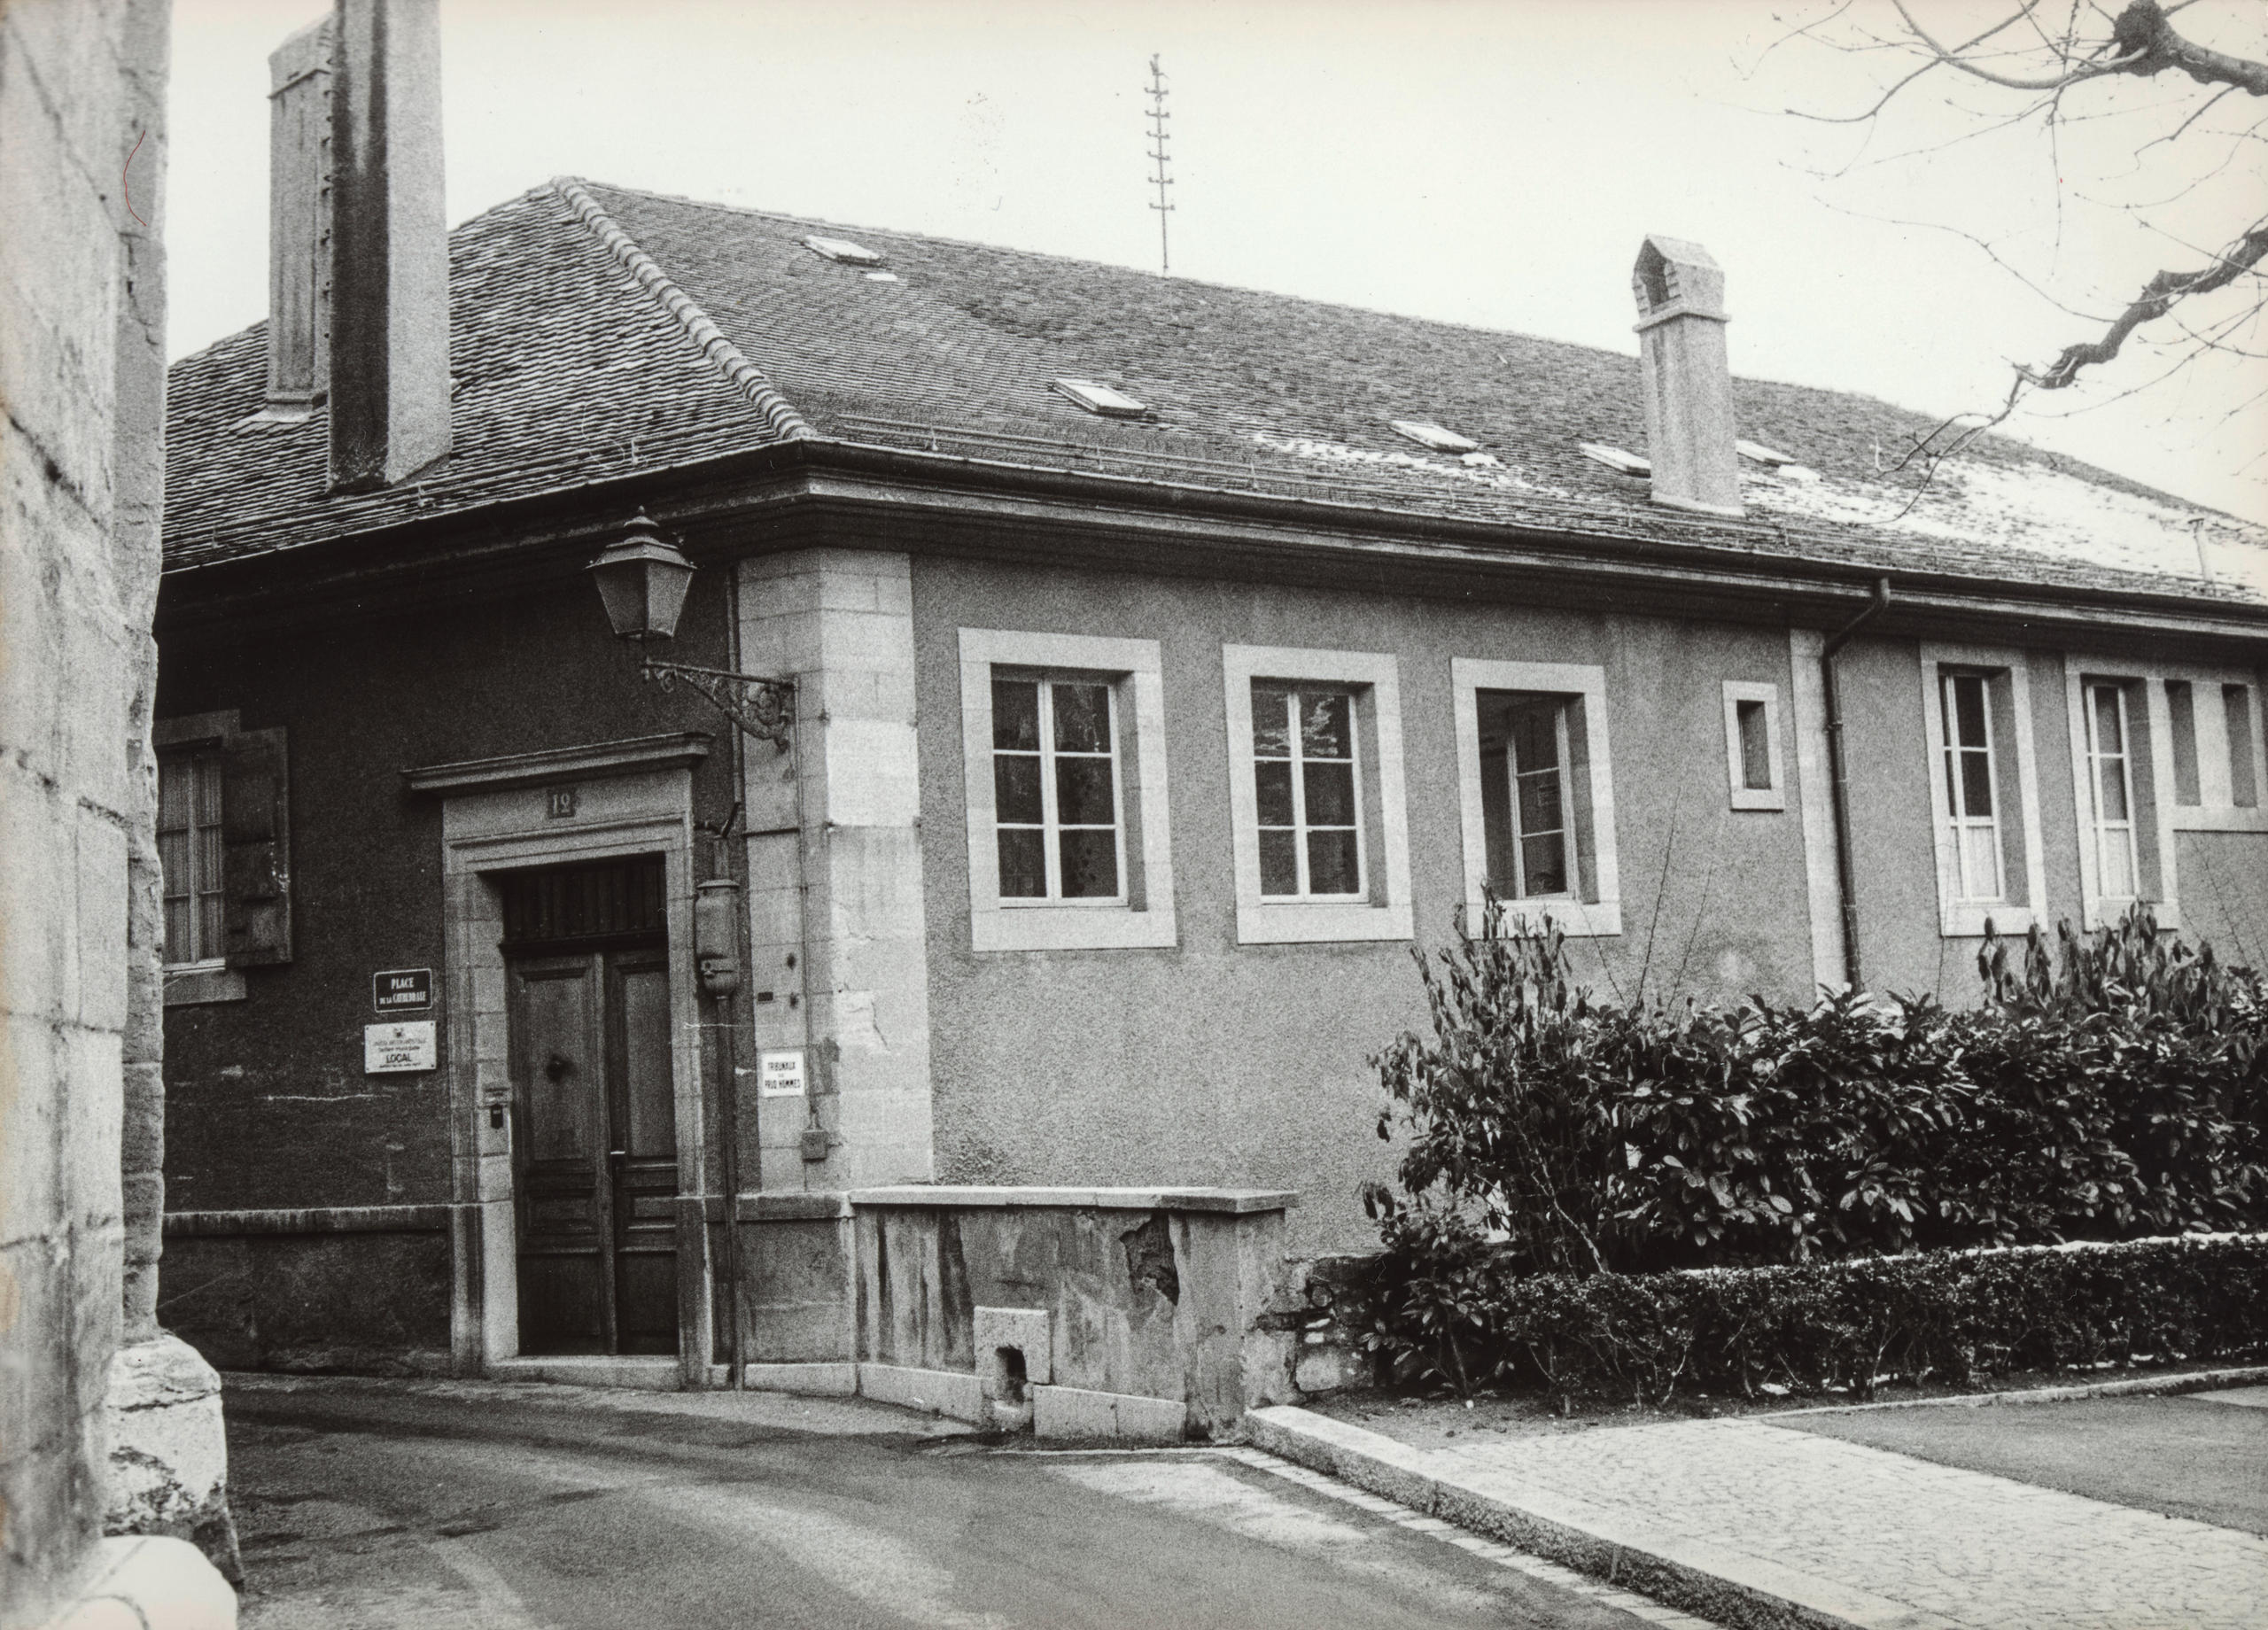 シネマテーク・スイスの最初の建物（カテドラル広場13、ローザンヌ）。1951年撮影